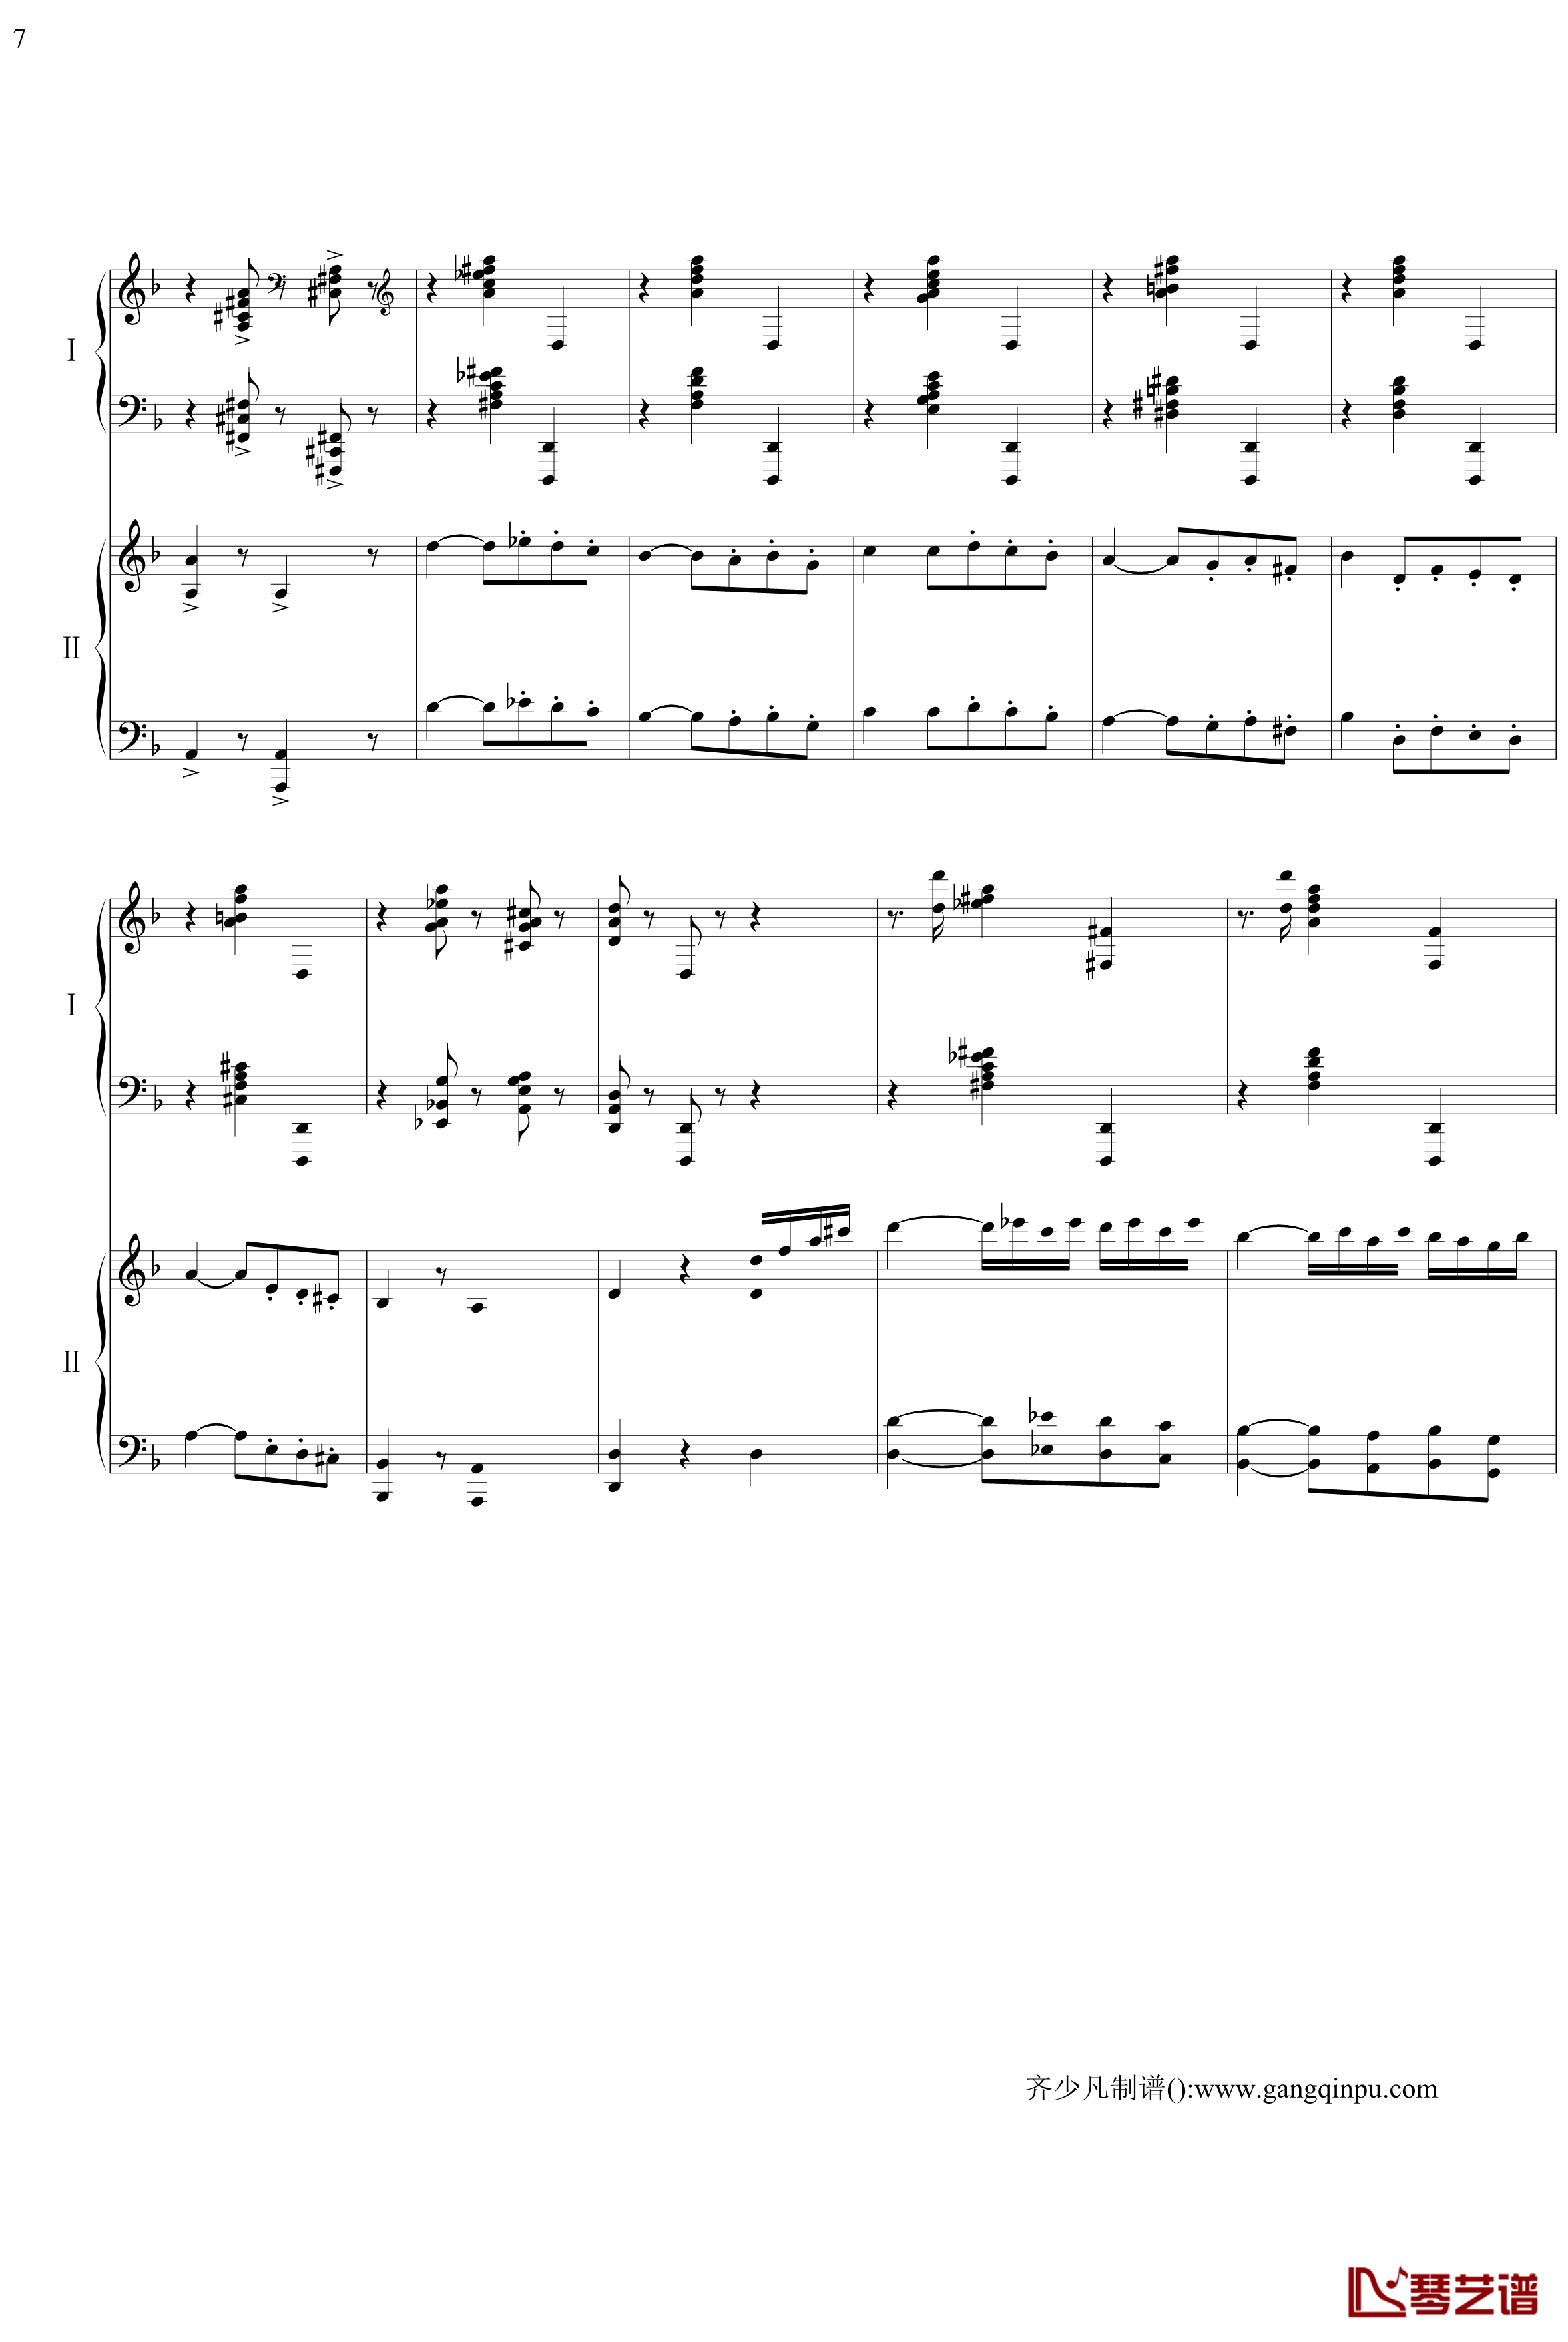 帕格尼尼主题狂想曲钢琴谱-11~18变奏-拉赫马尼若夫7